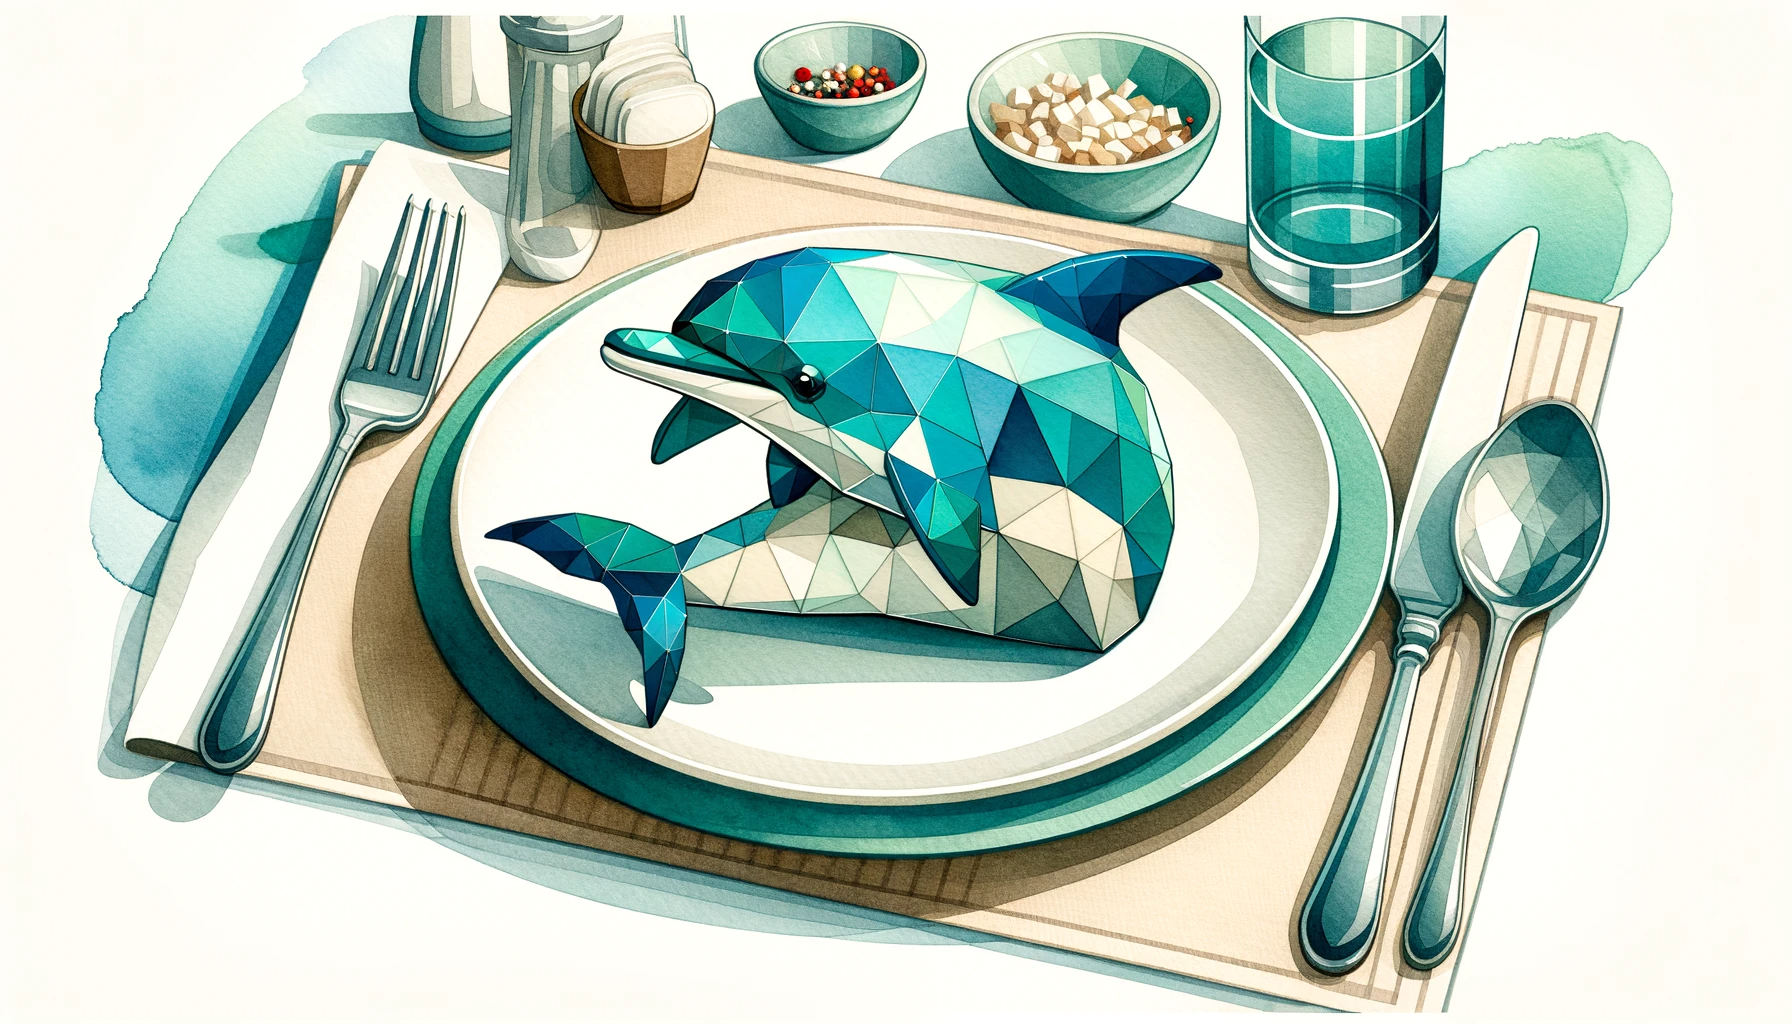 Würden Sie lieber einen Delfin essen oder unser Produkt kaufen?